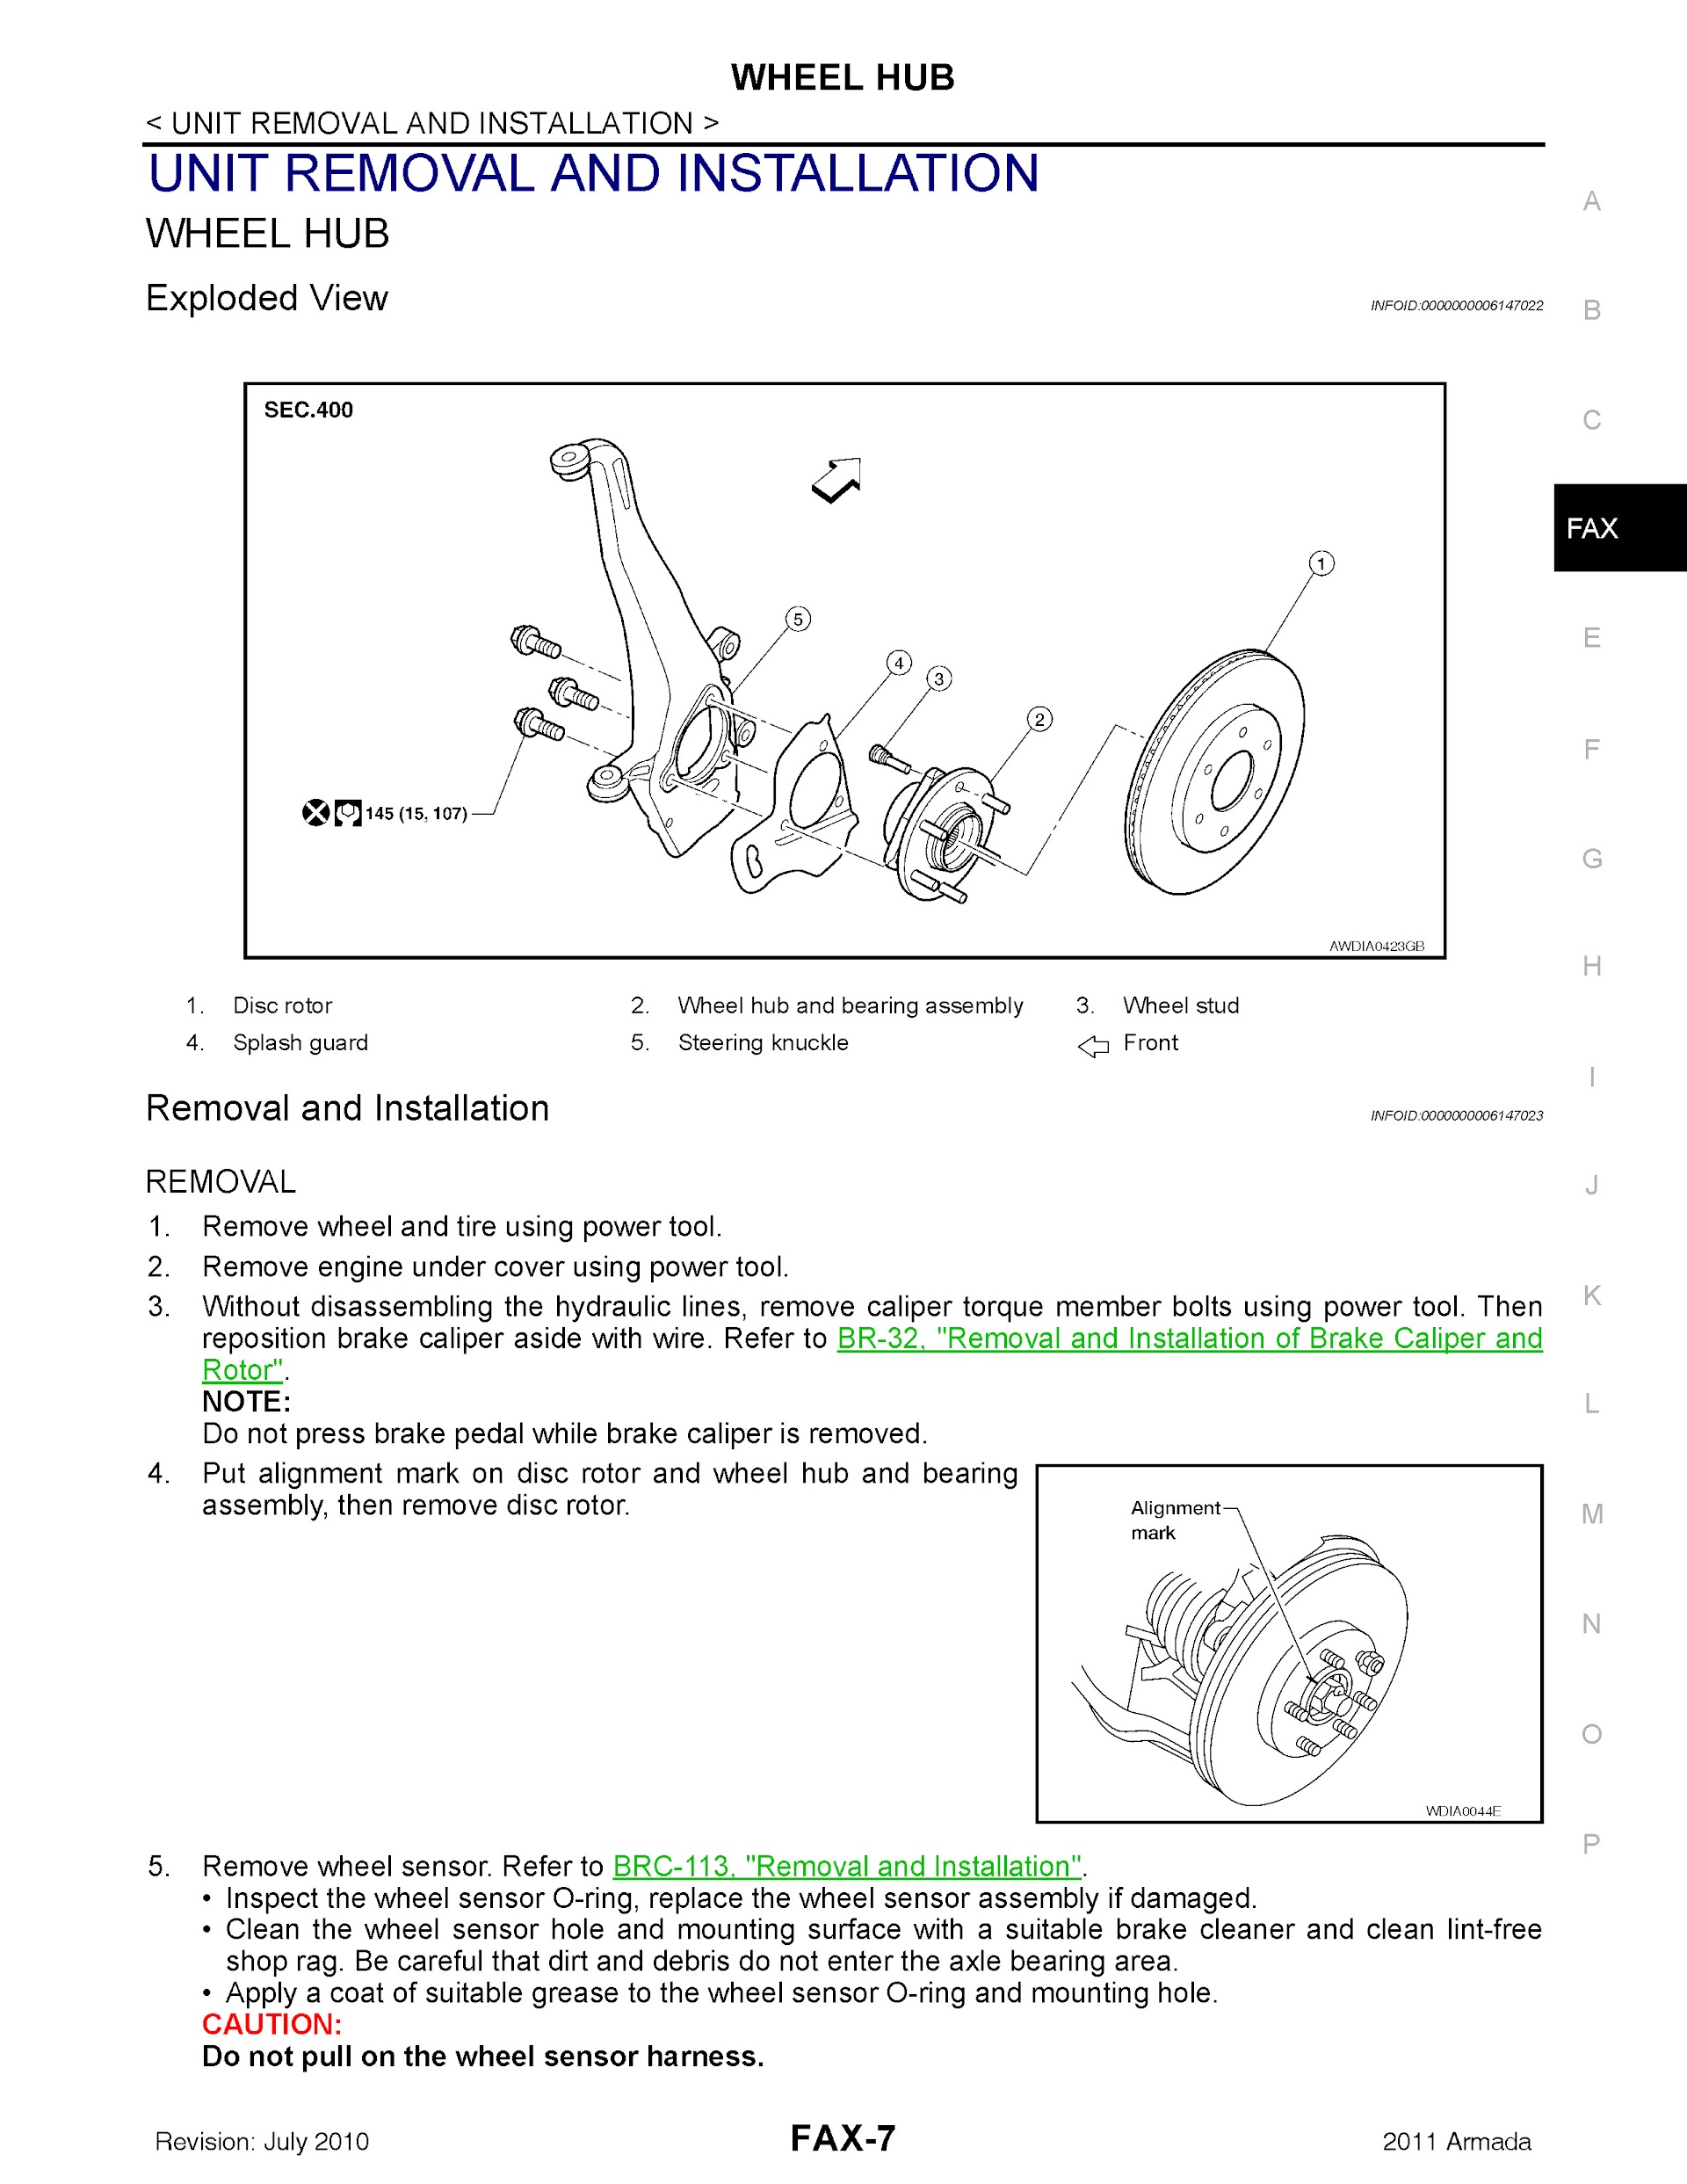 2010 nissan armada repair manual in PDF file format.